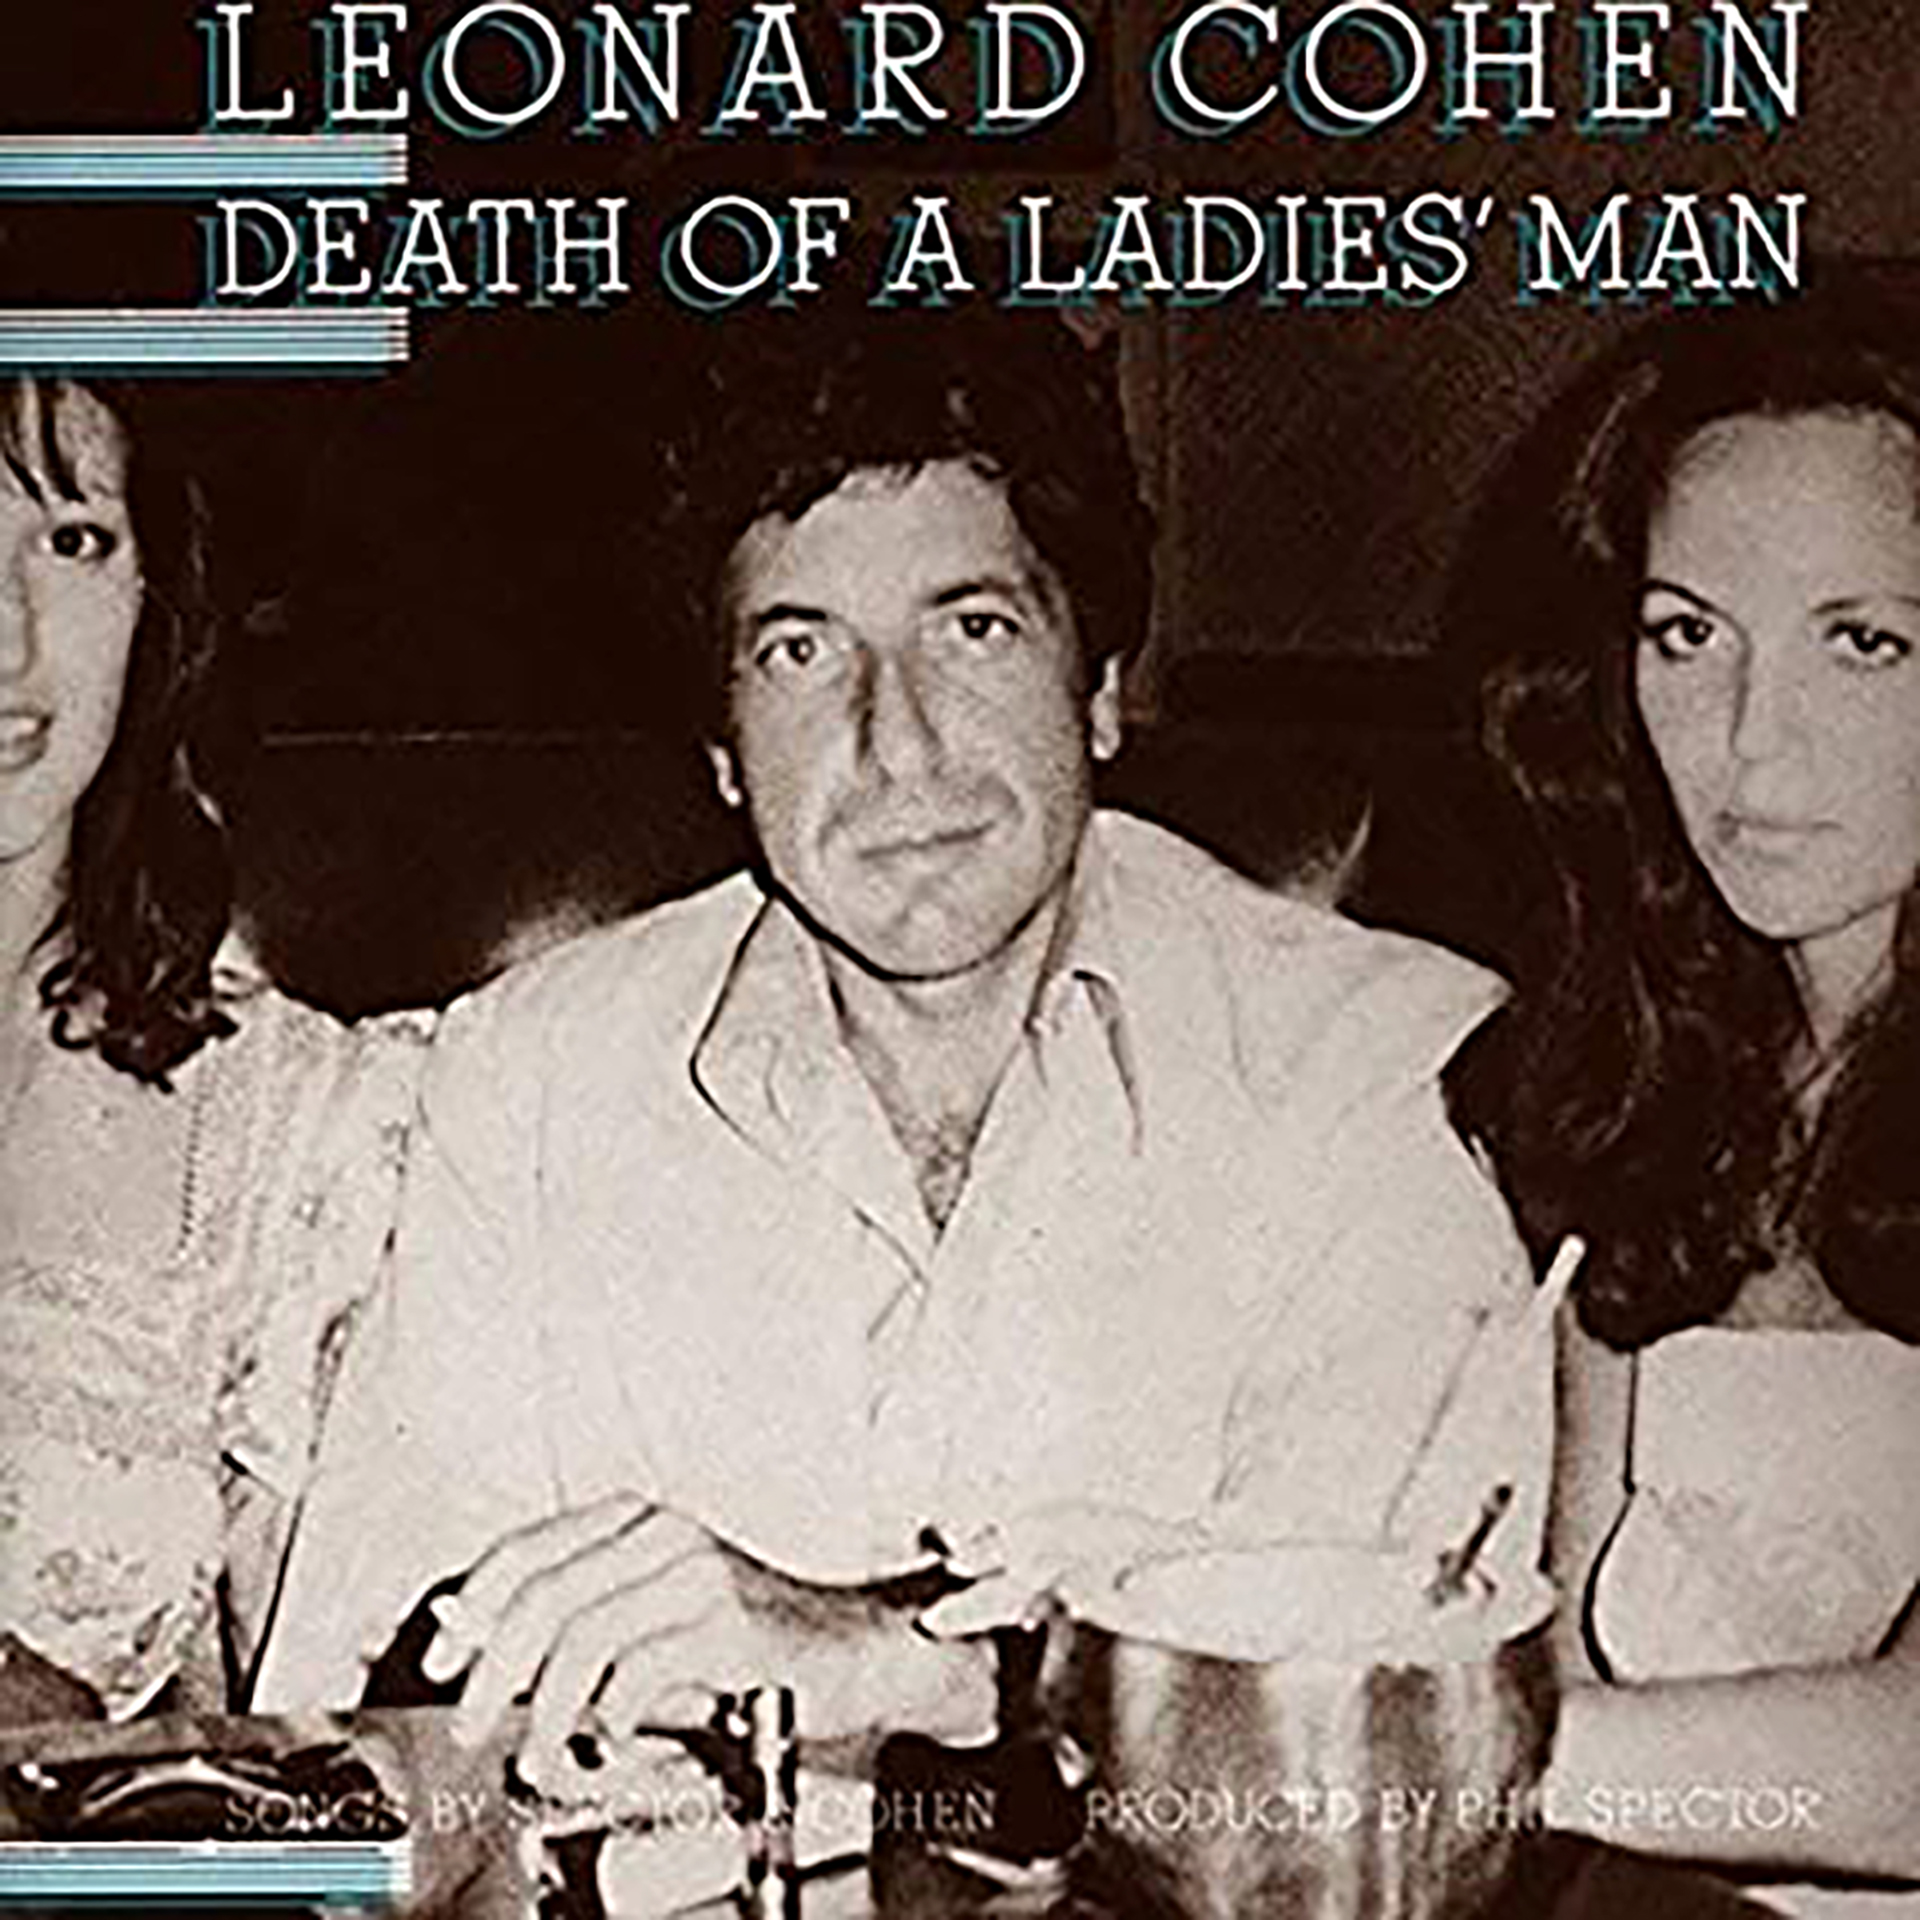 Leonard Cohen fue uno de los artistas que lo contrató. También fue uno de los que sufrió sus amenazas. Spector le apuntó con un arma en medio del estudio.